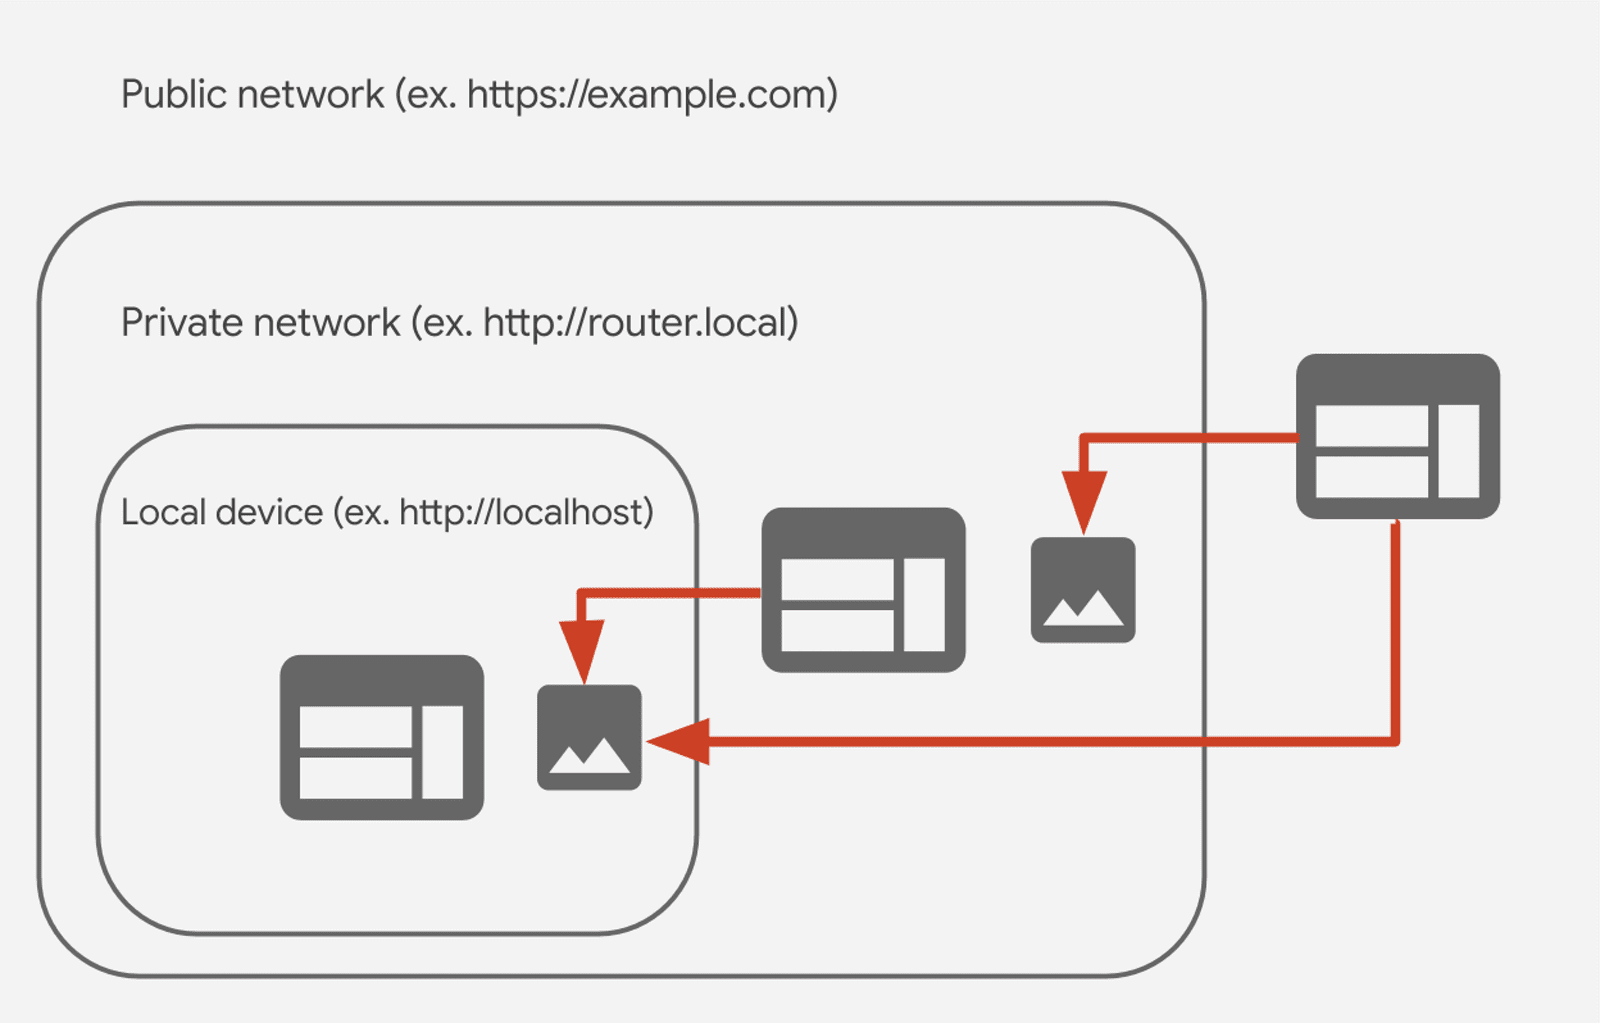 ความสัมพันธ์ระหว่างเครือข่ายสาธารณะ เครือข่ายส่วนตัว ในเครือข่ายภายในเครือข่ายส่วนตัว
การเข้าถึง (CORS-RFC1918) 